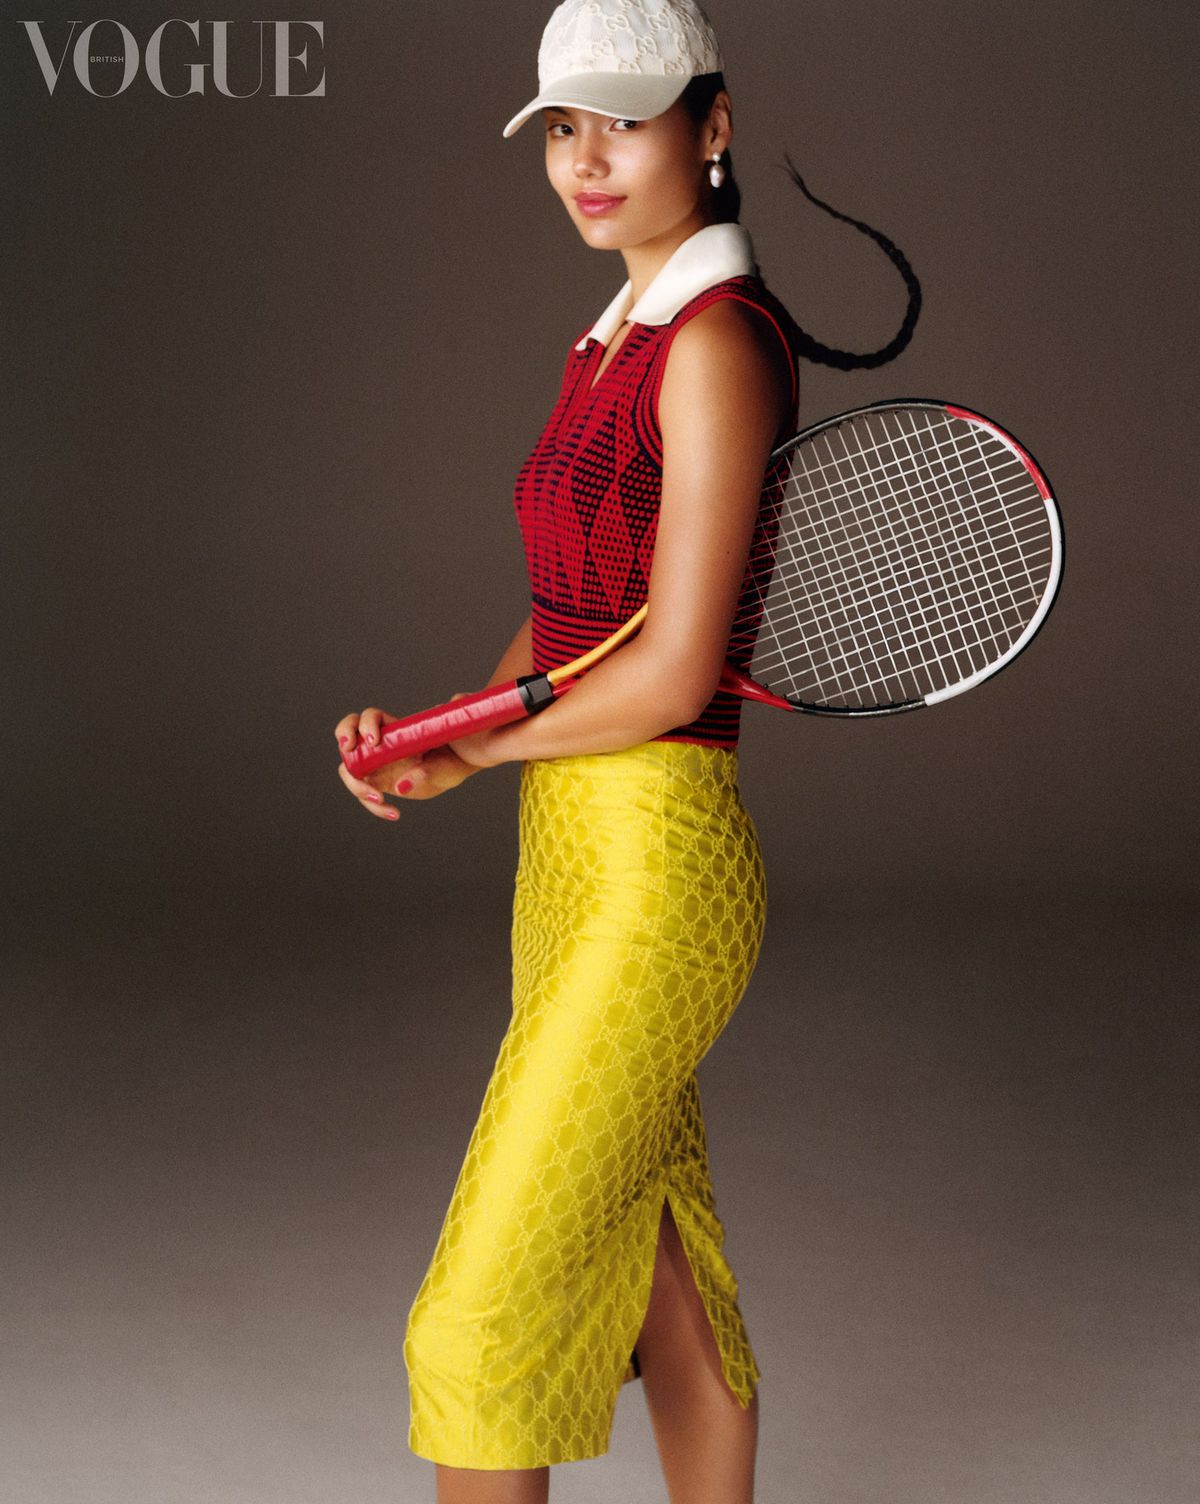 Emma Răducanu, steaua cu origini românești a tenisului britanic, poze pe teren, personale și din Vogue